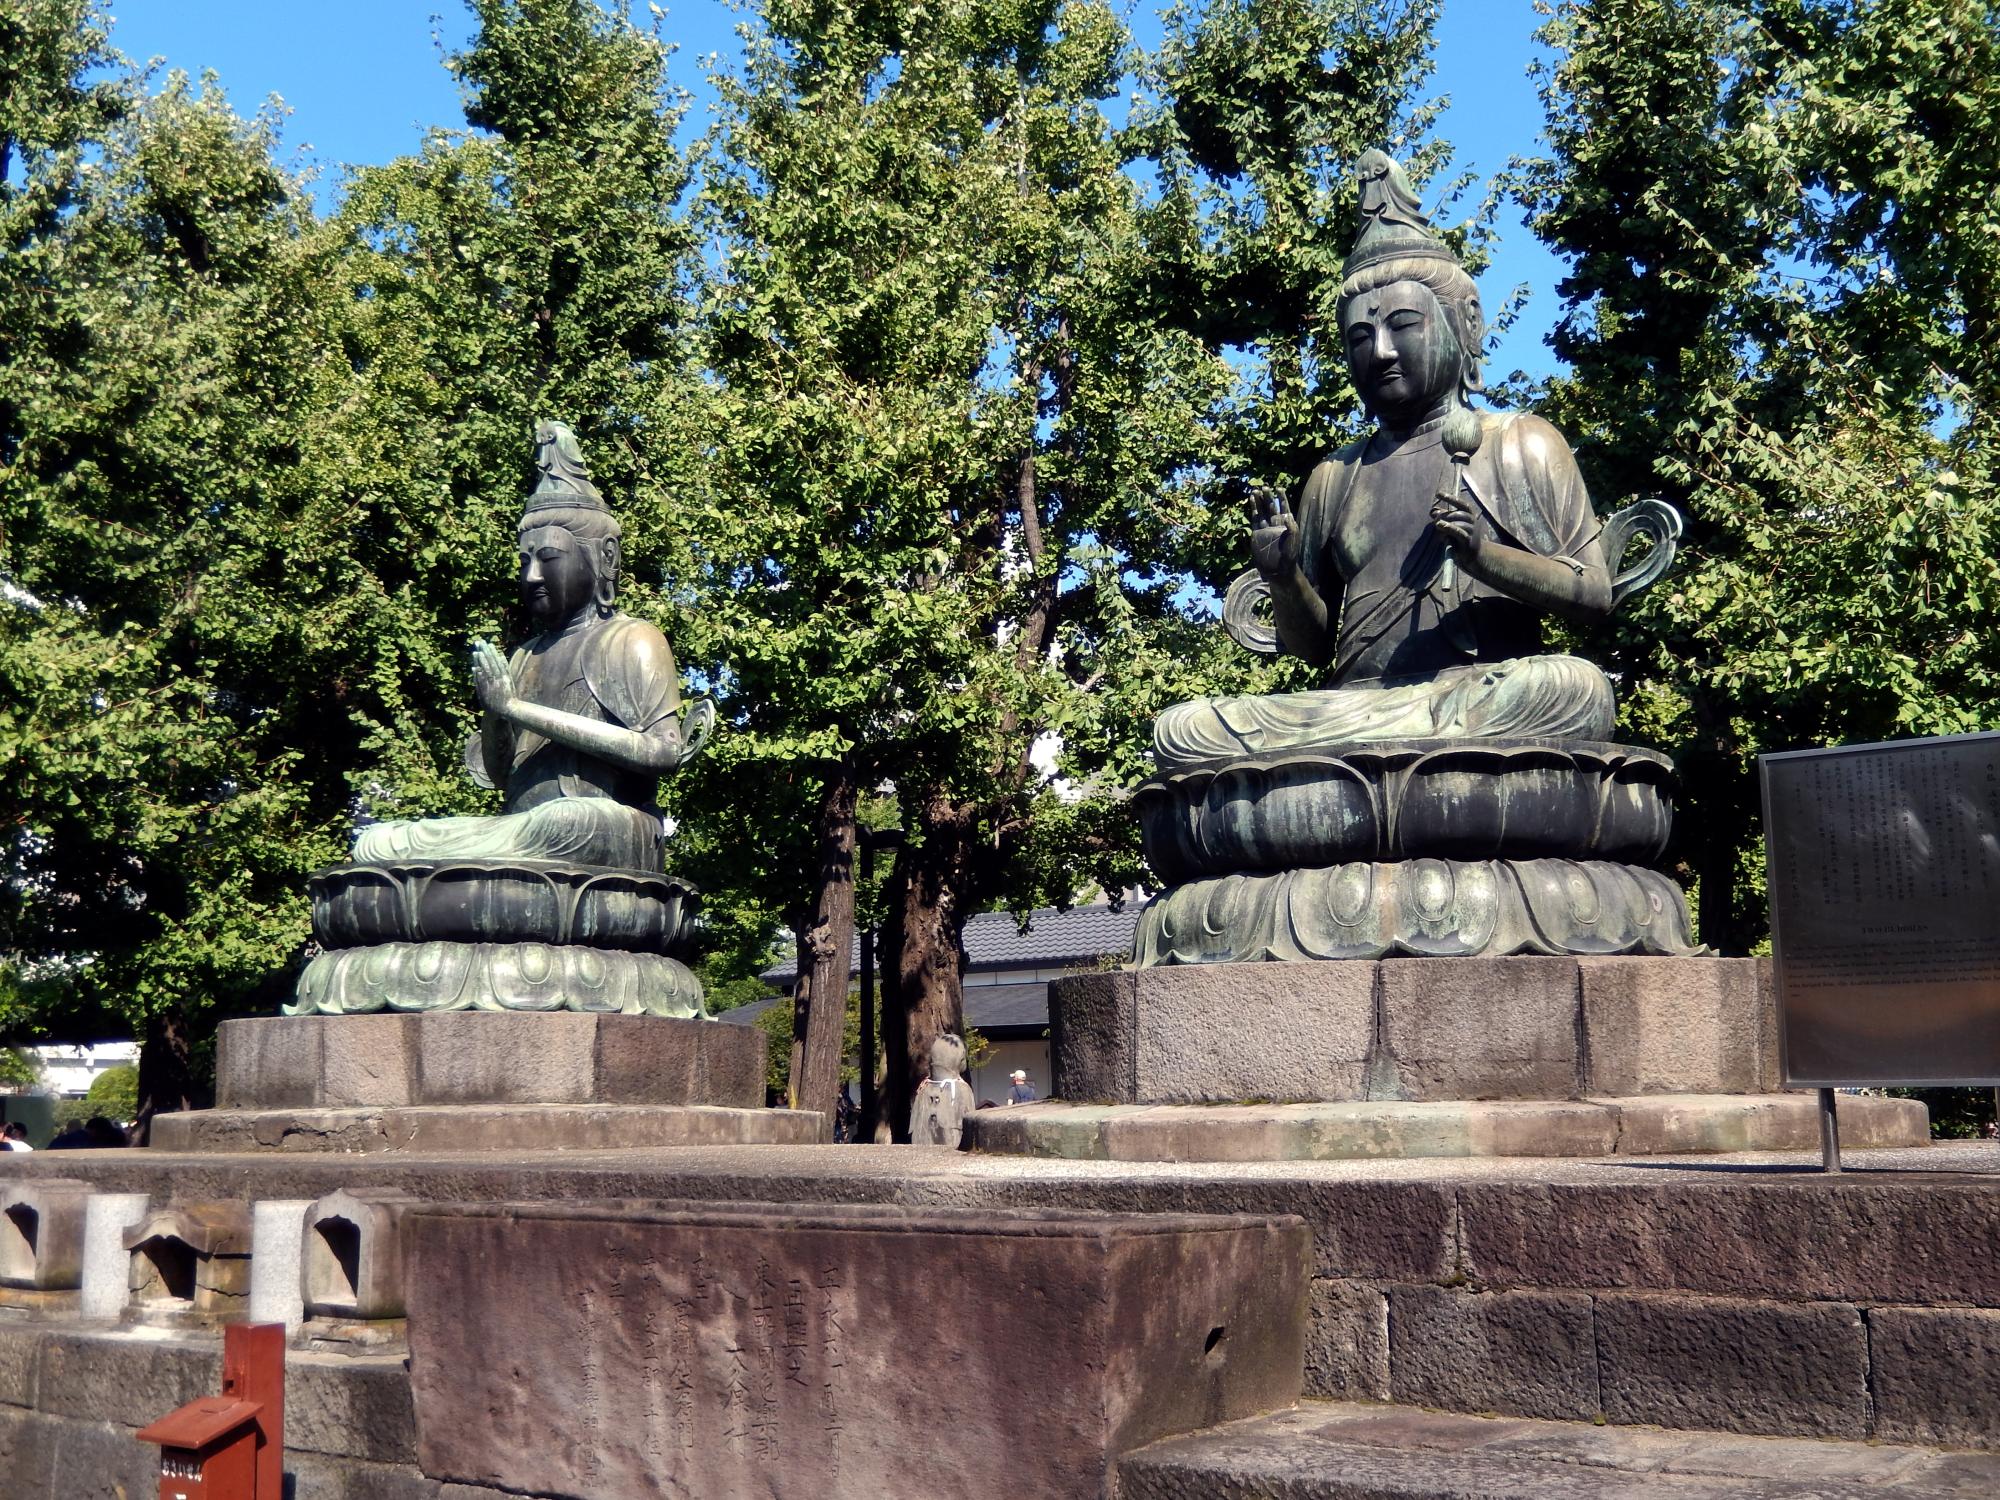 Tokyo (2015) - Two Buddhas